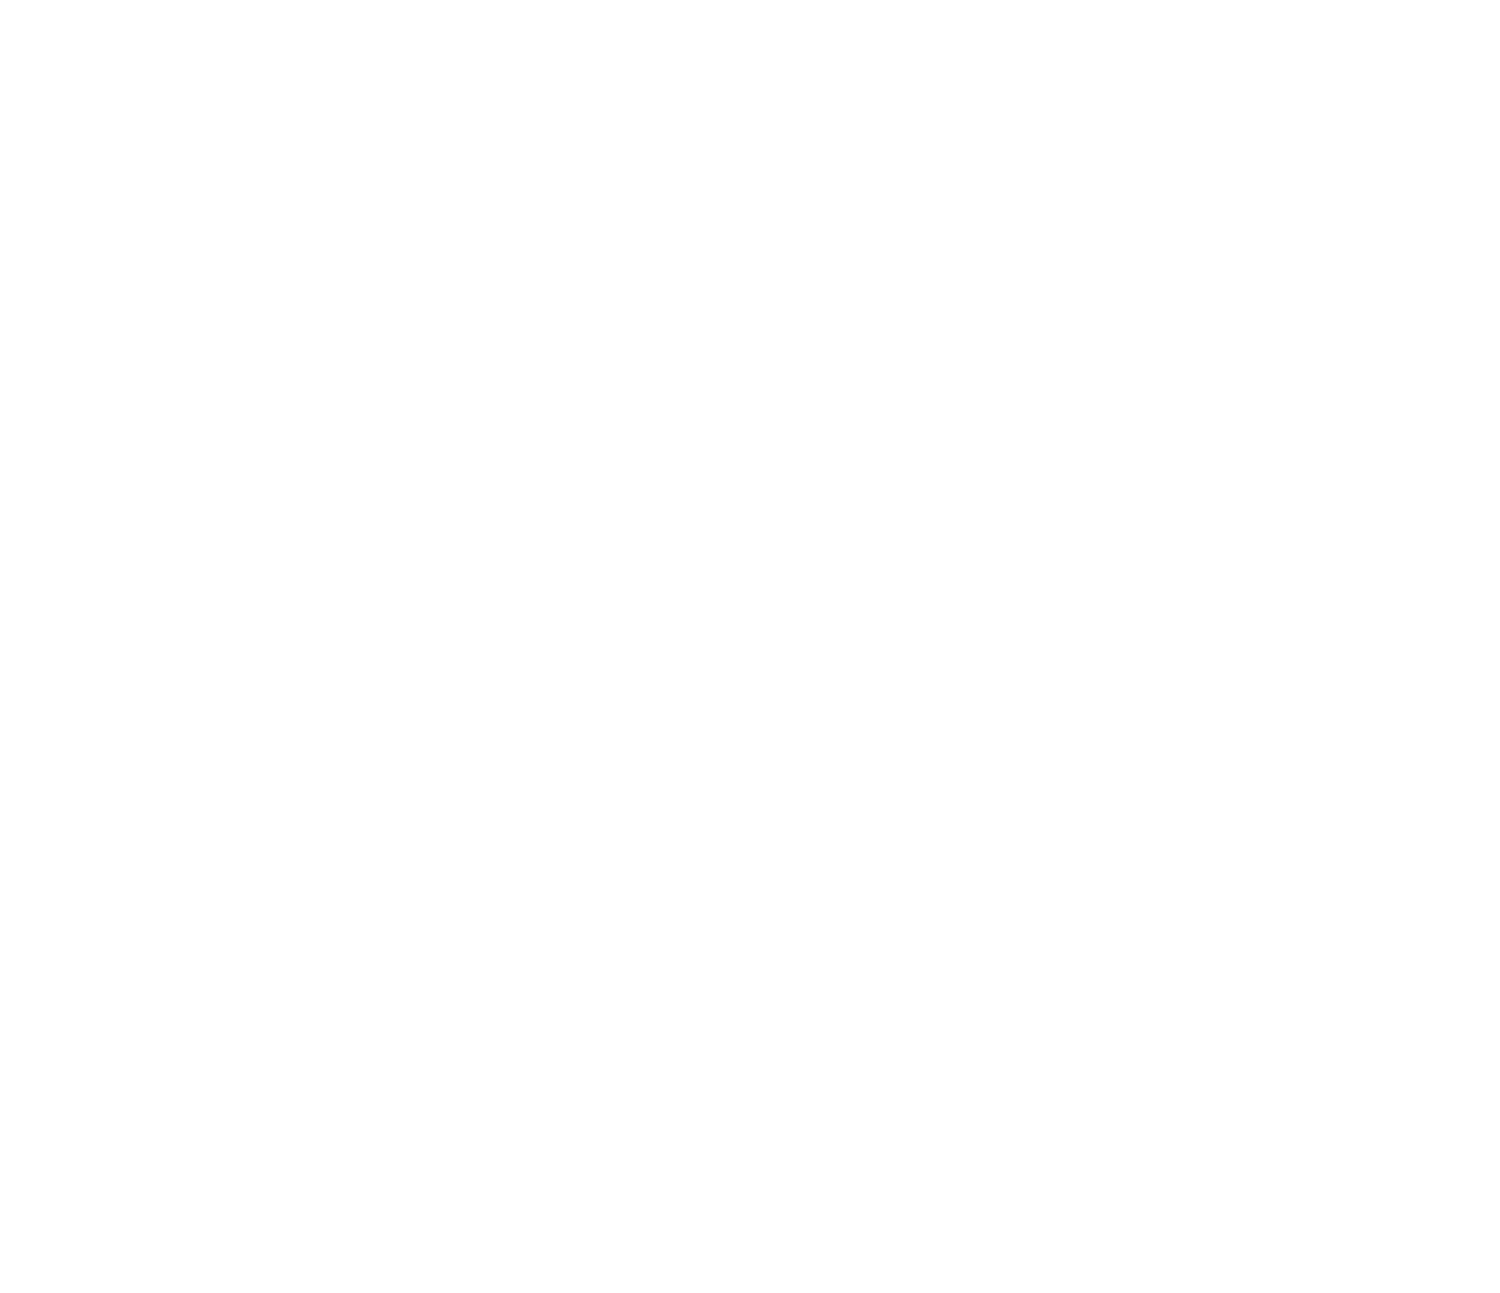 Rio Grande Headwaters Land Trust